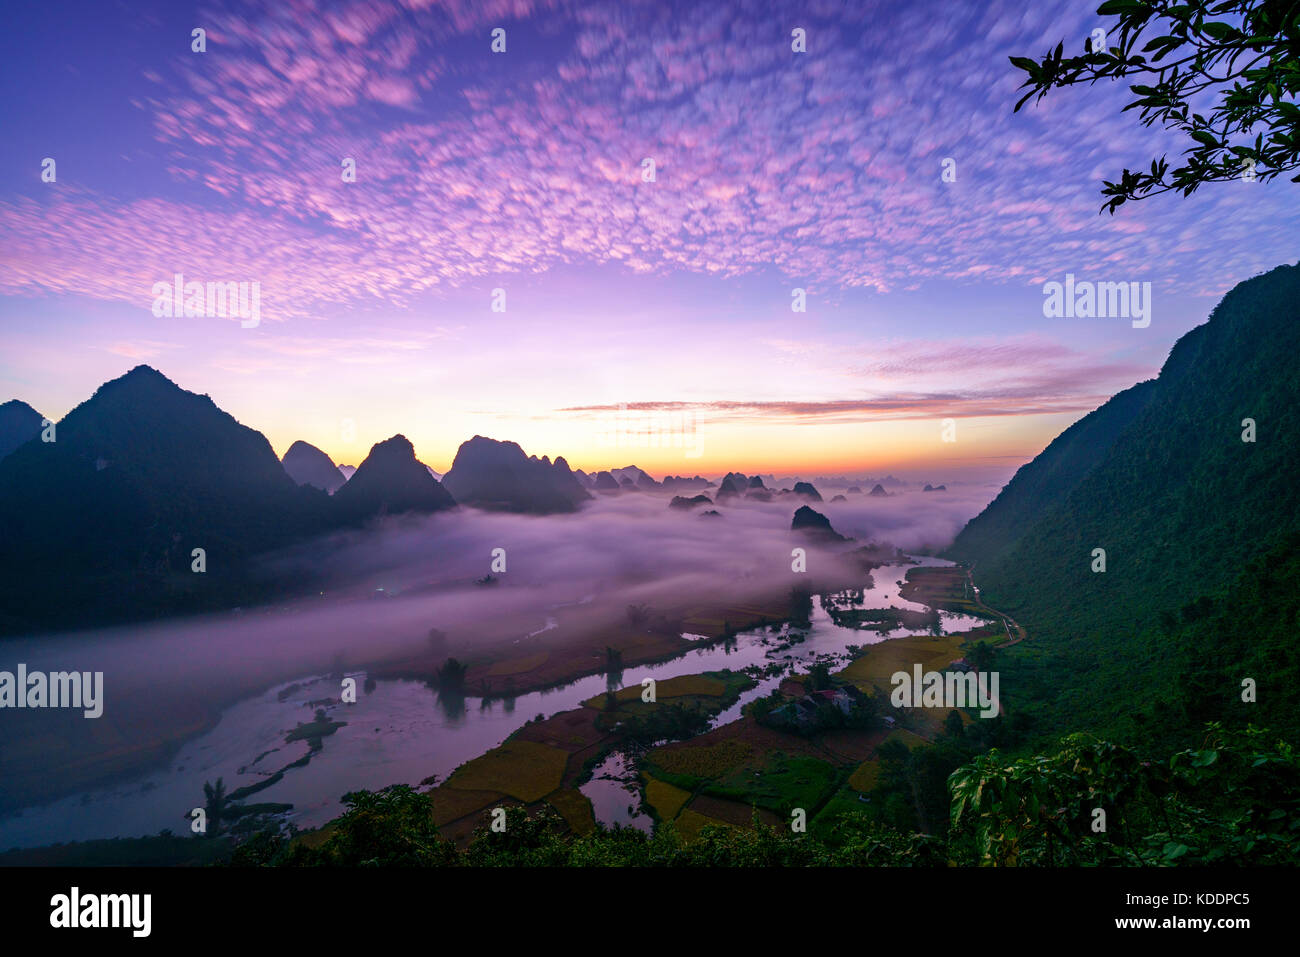 Royalty Free Stock Bild in hoher Qualität von Dämmerung und Nebel, in den Bergen, Fluss und Reis Feld bei Trung Khanh Stadt, Cao Bang Provinz, Vietnam. Stockfoto